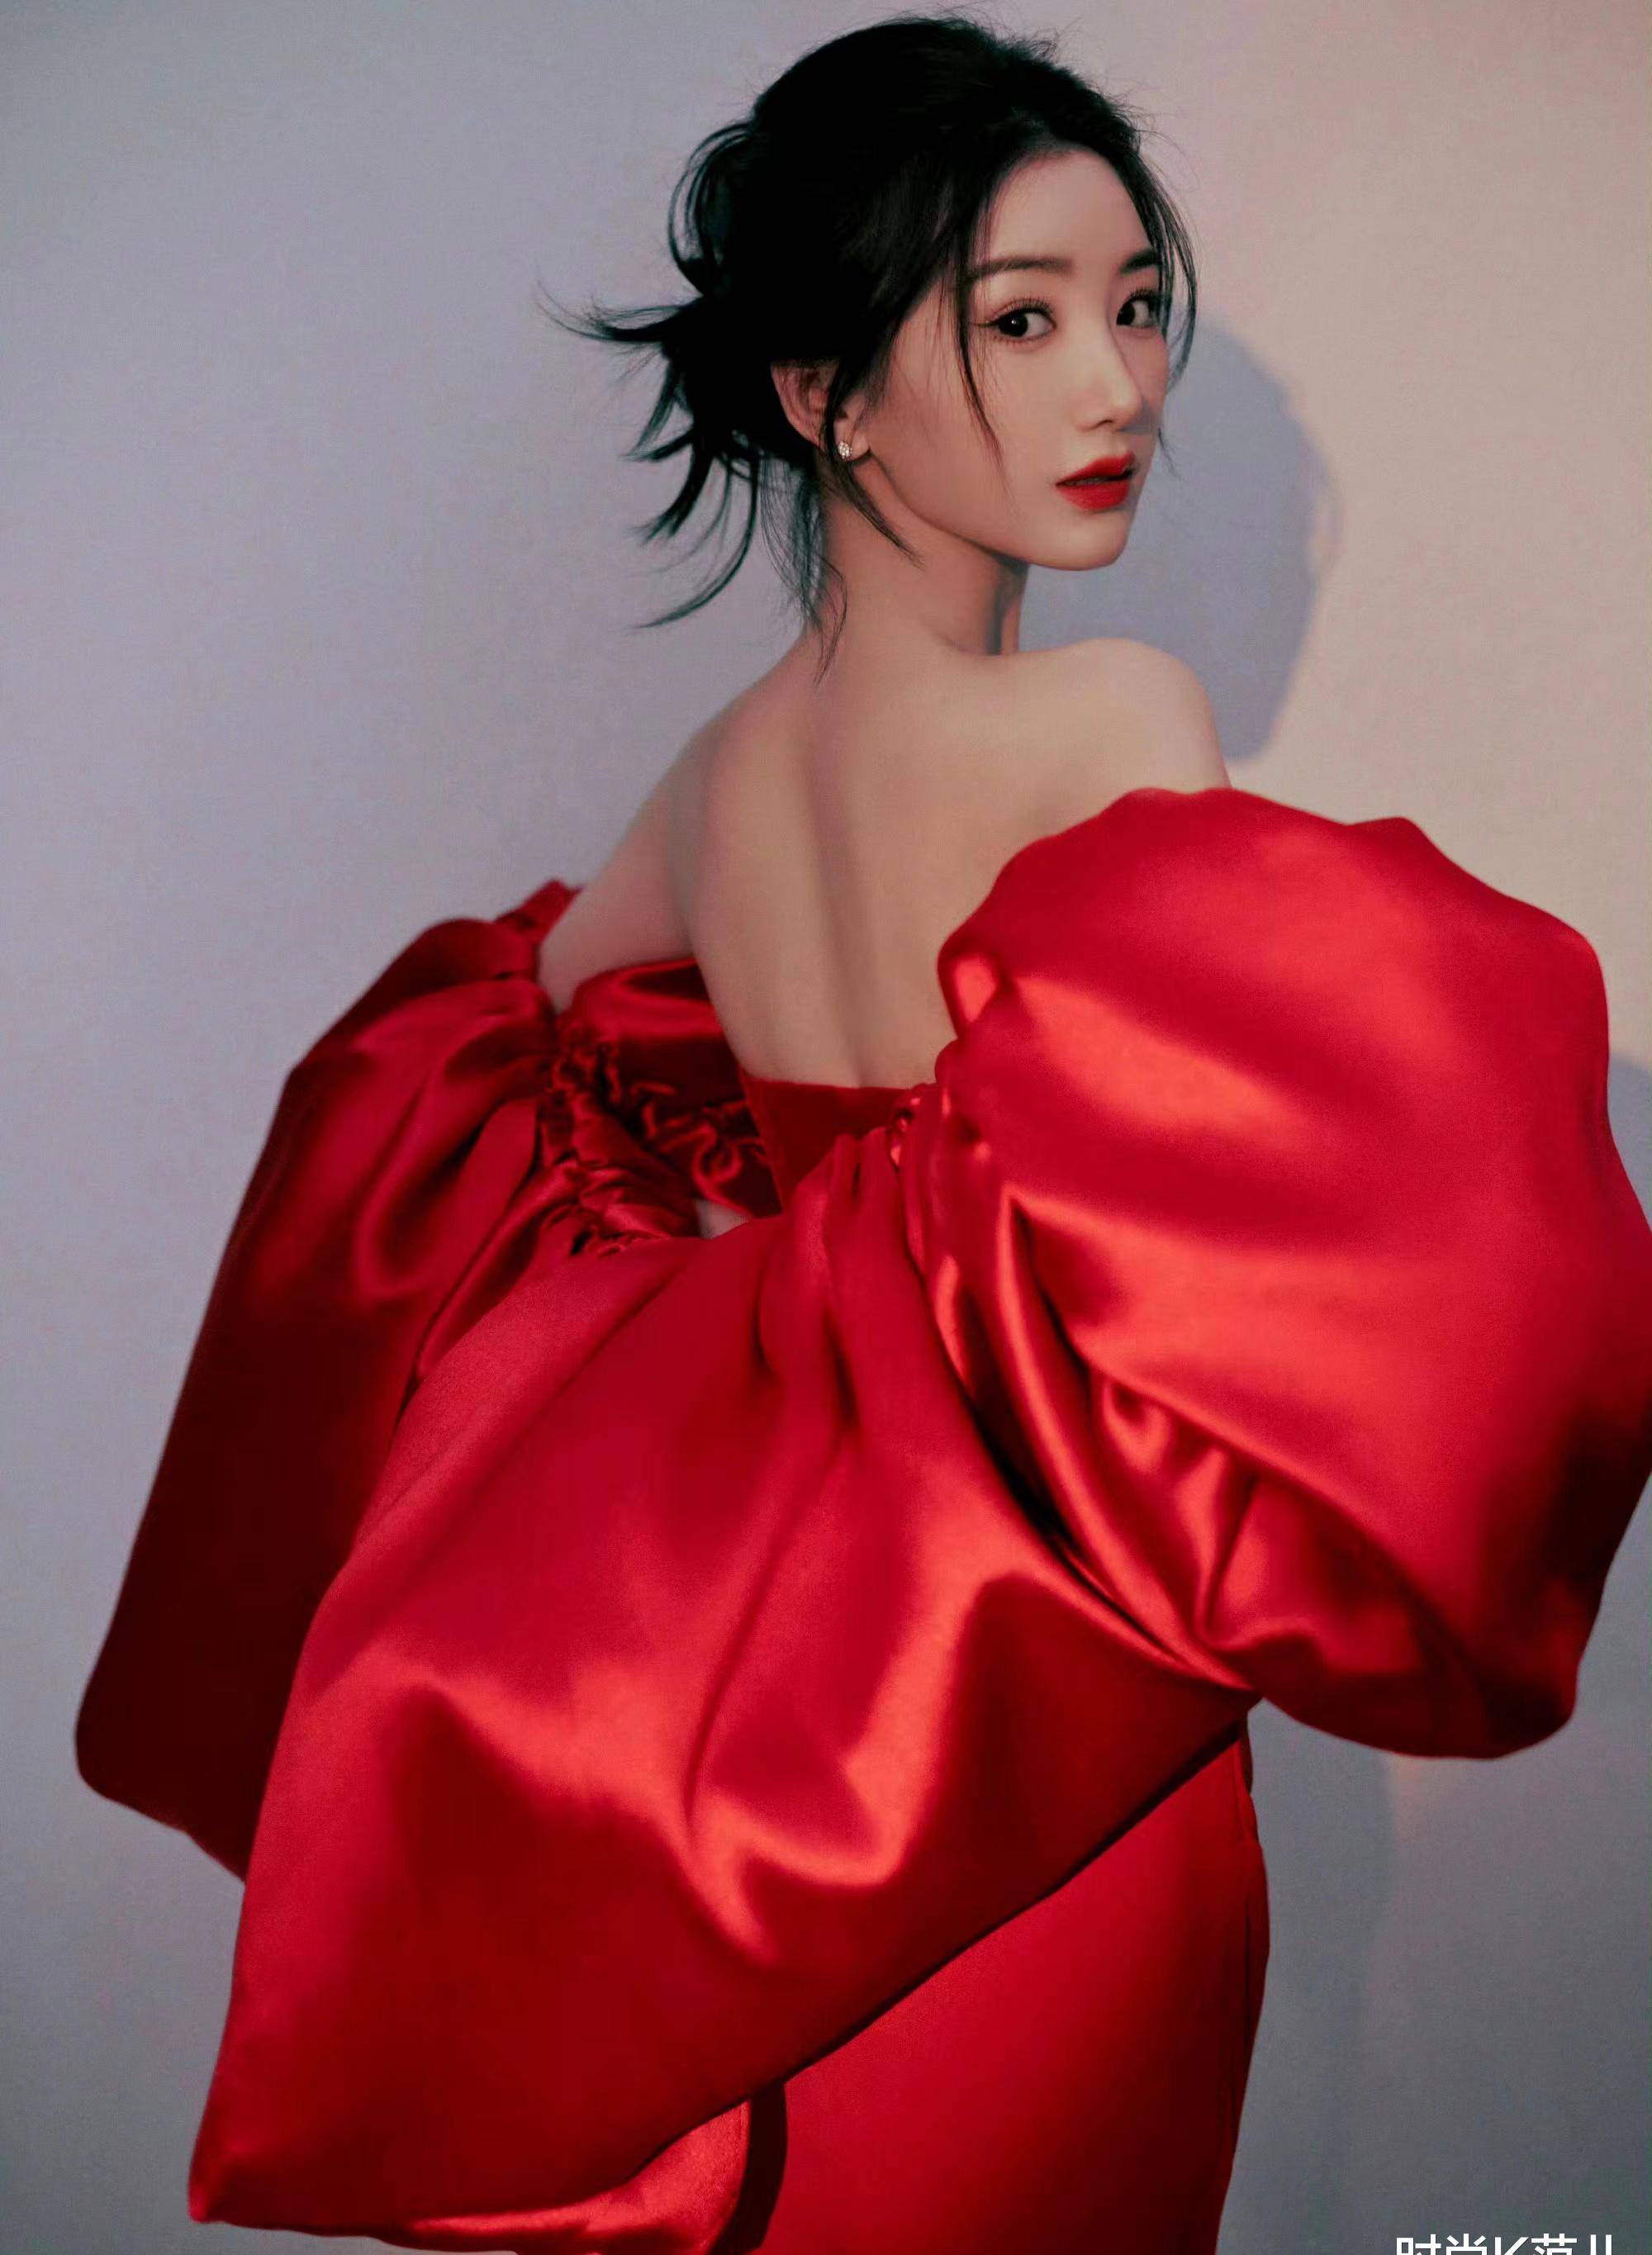 毛晓彤国剧盛典造型太美了,一袭大红色抹胸裙,优雅又惊艳!